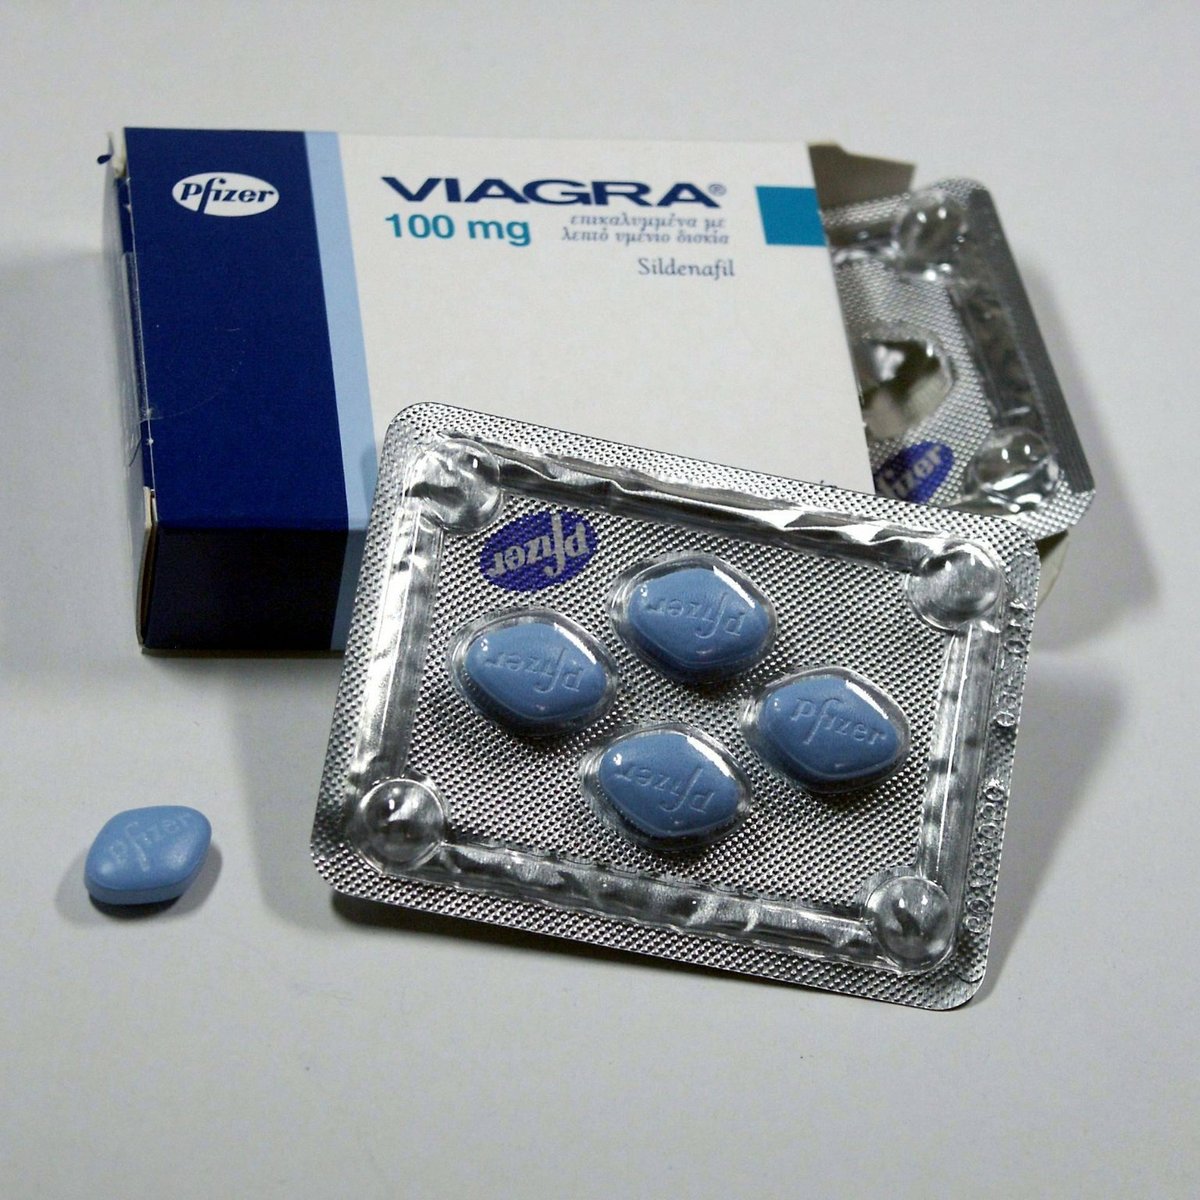 Viagra könnte bald rezeptfrei erhältlich sein